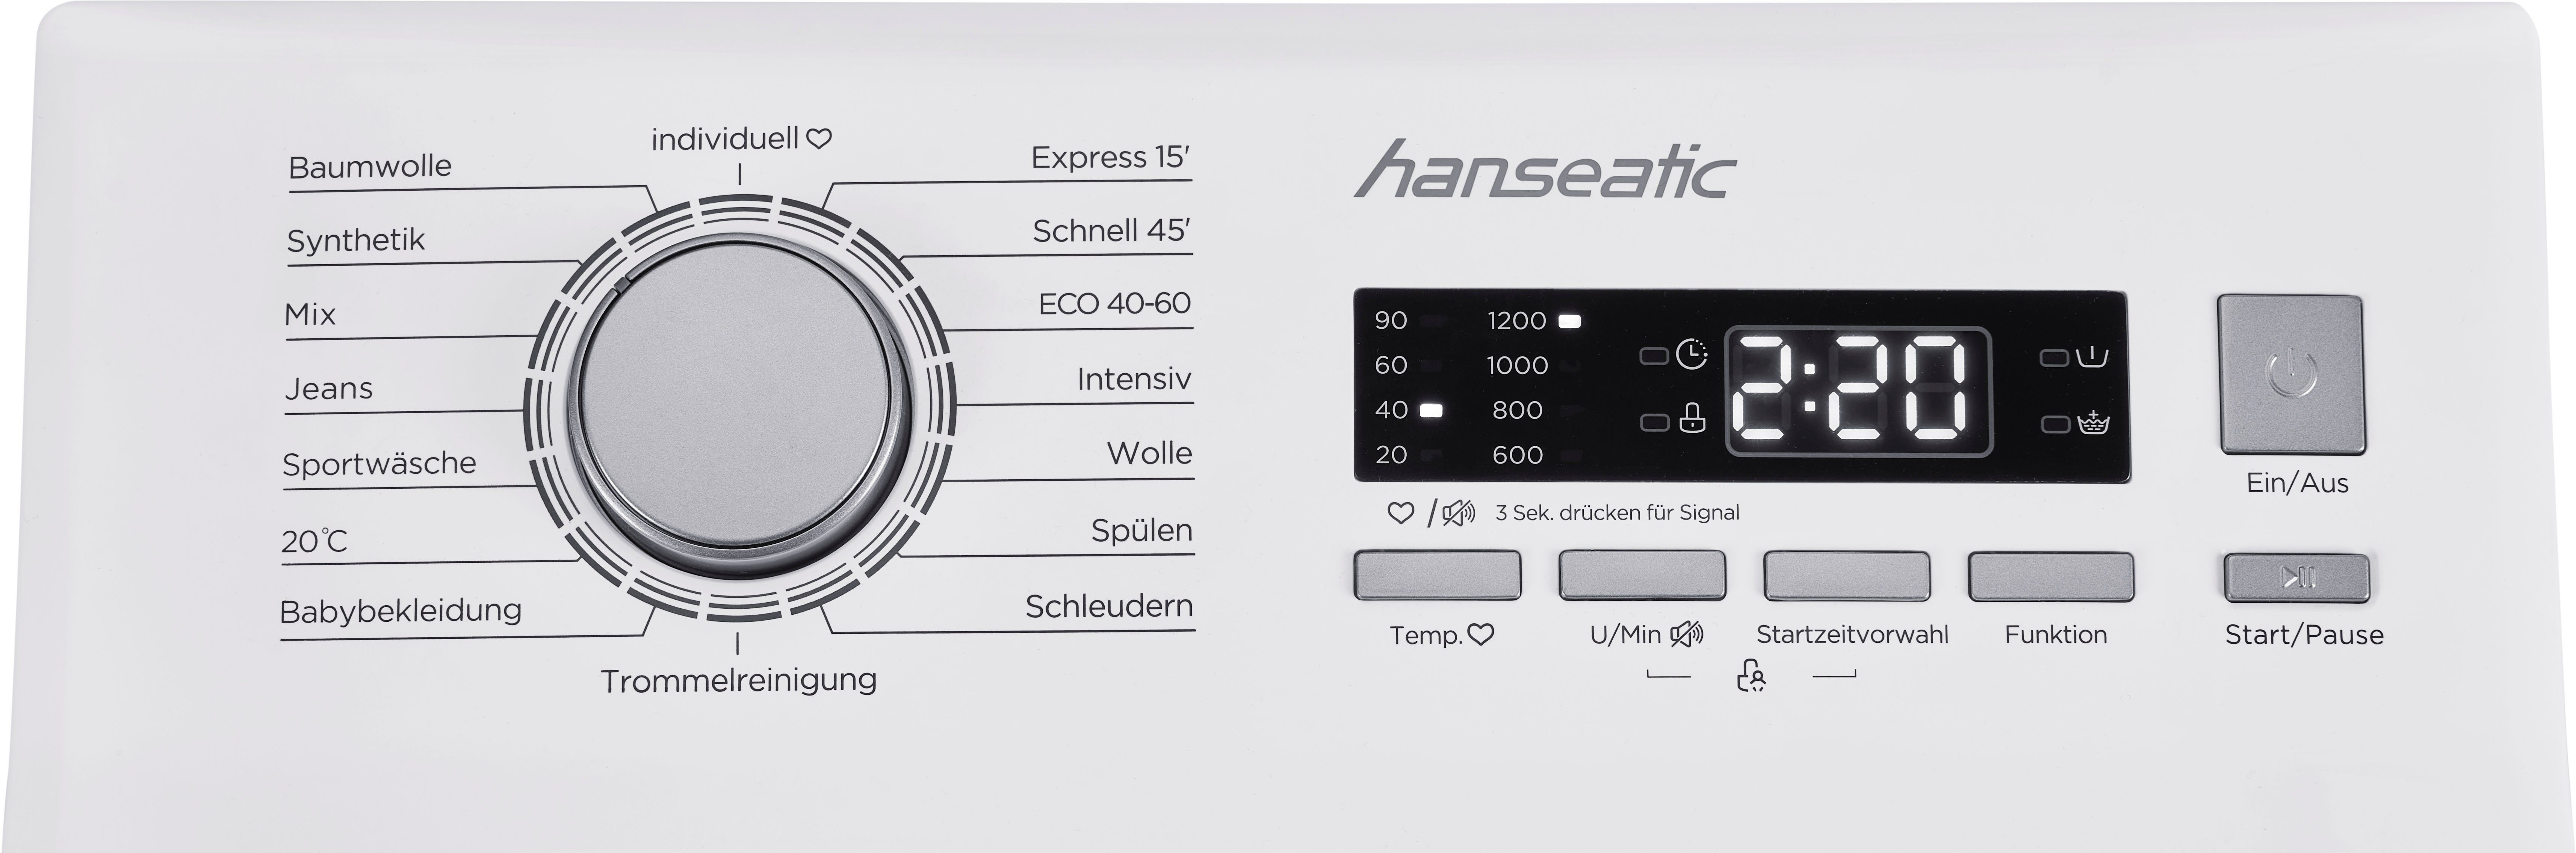 1200 Waschmaschine Hanseatic HTW712D, kg, Überlaufschutzsystem 7 U/min, Mengenautomatik, Toplader